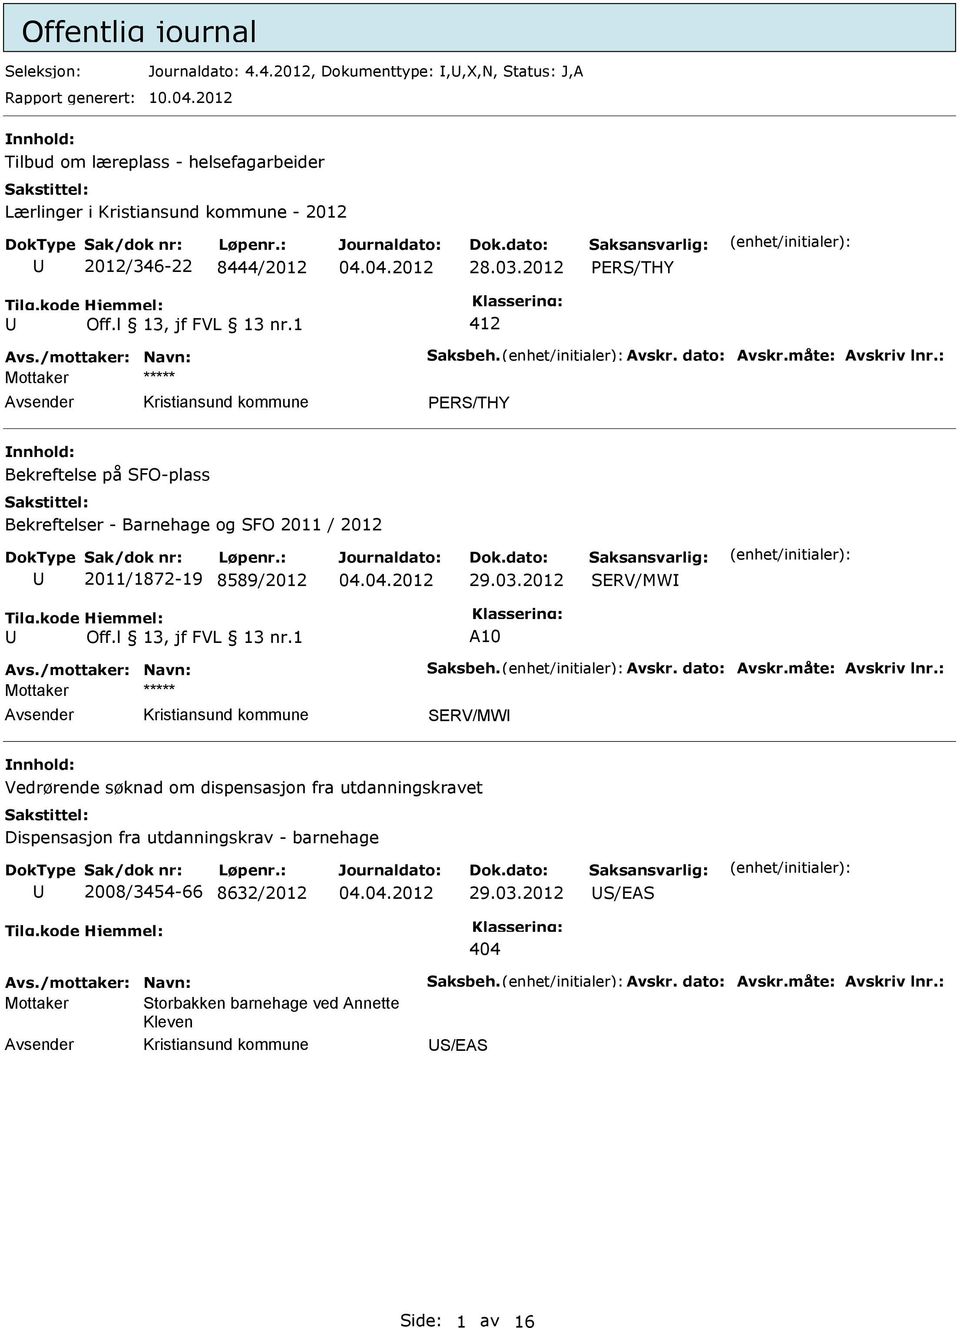 1 412 Mottaker vsender PERS/THY Bekreftelse på SFO-plass Bekreftelser - Barnehage og SFO 2011 / 2012 2011/1872-19 8589/2012 29.03.2012 SERV/MW Off.